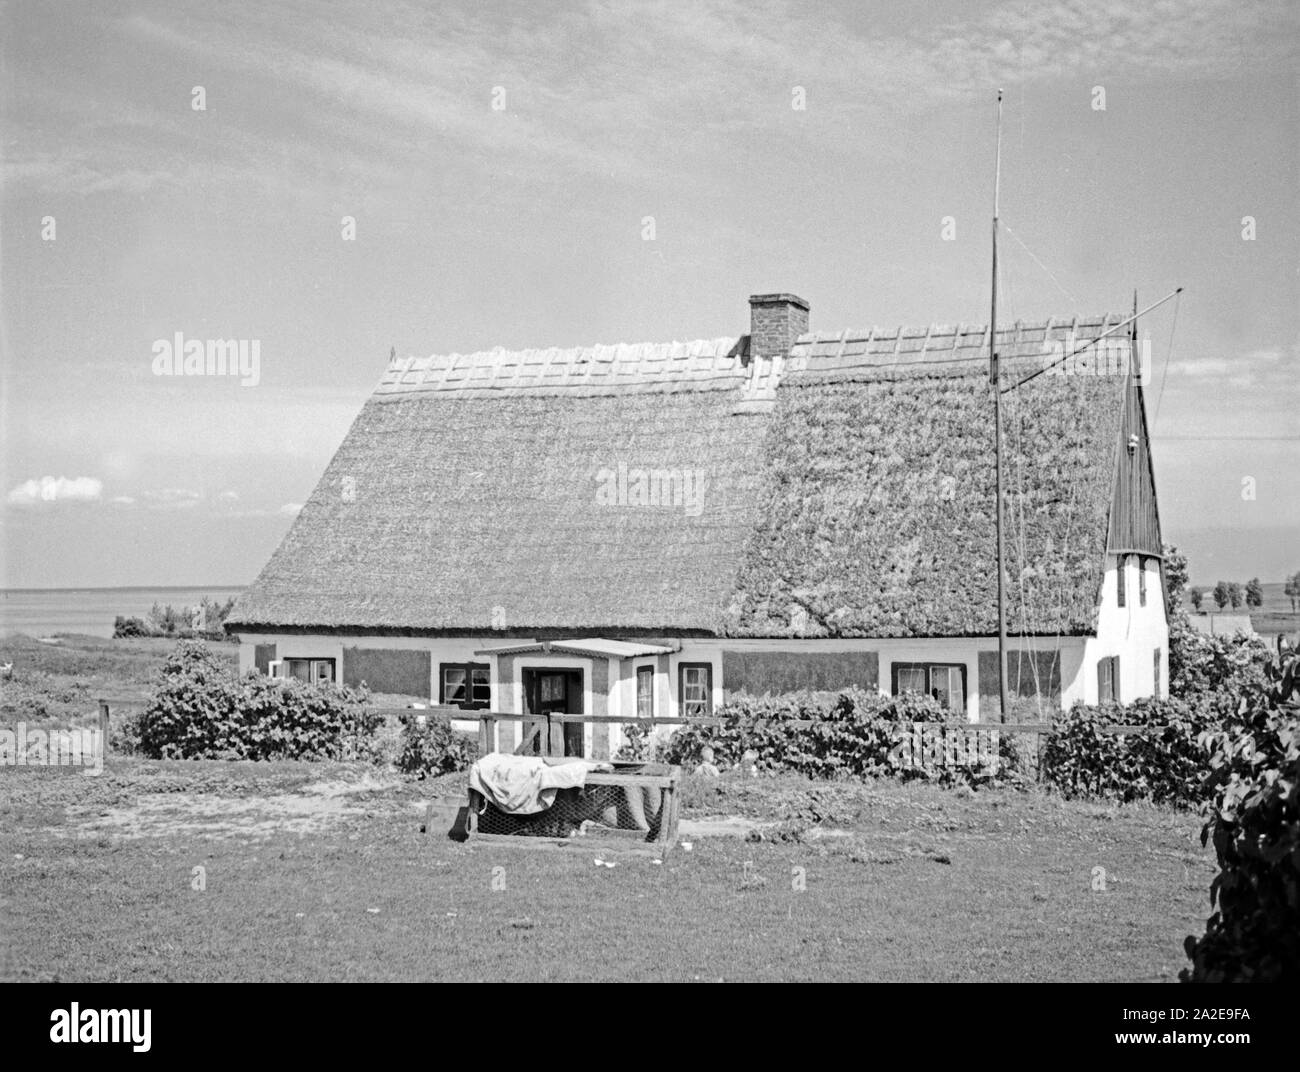 Ein Fischerhaus in der Ortschaf Kahlholz im Frischen Haff in Ostpreußen, 1930er Jahre. Fisherman's house in the village Kahlholz near Vistula Lagoon, East Prussia, 1930s. Stock Photo